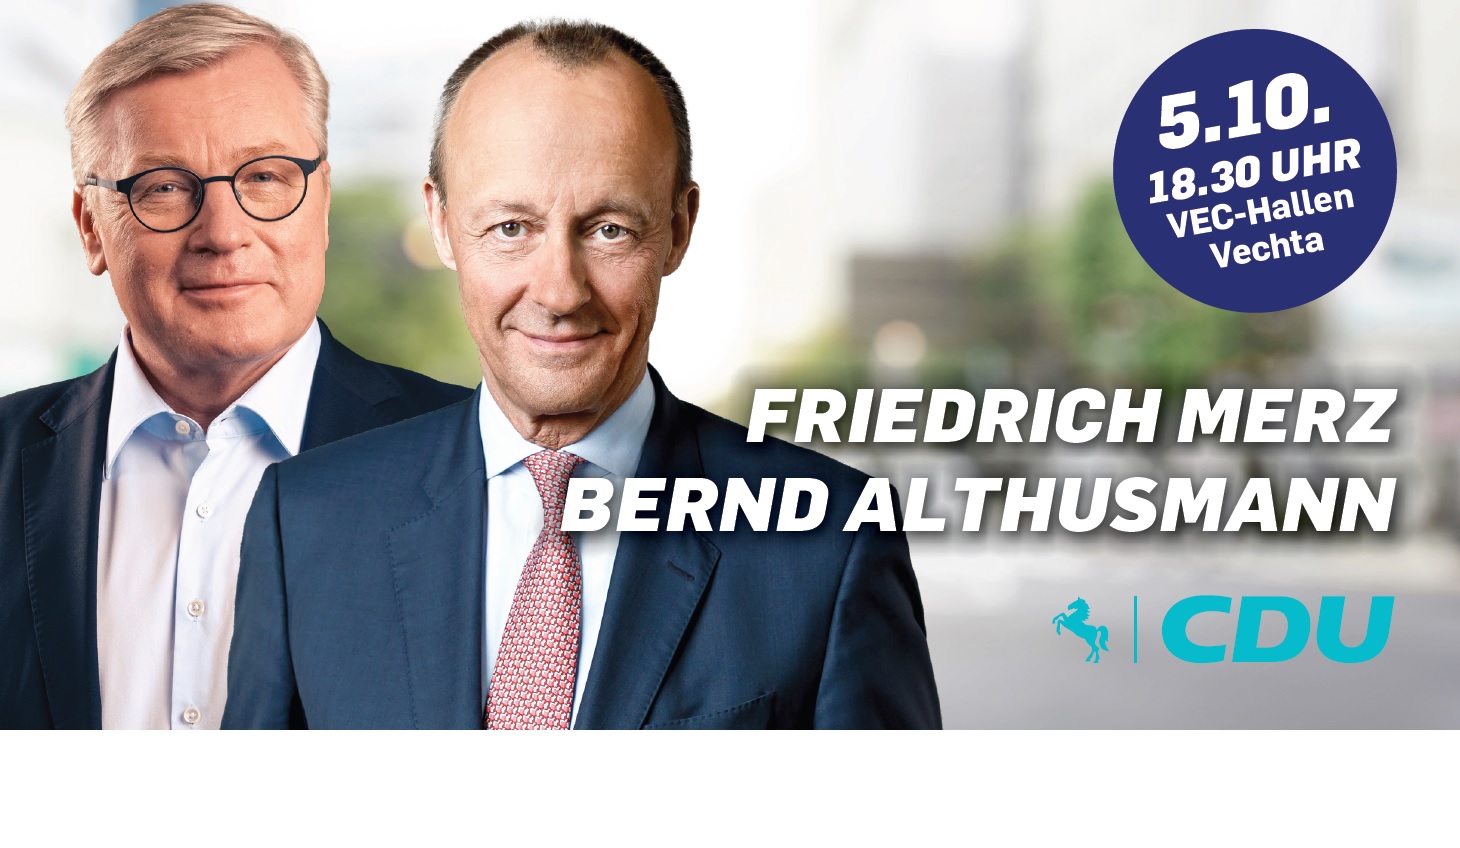 Friedrich Merz und Bernd Althusmann in Vechta